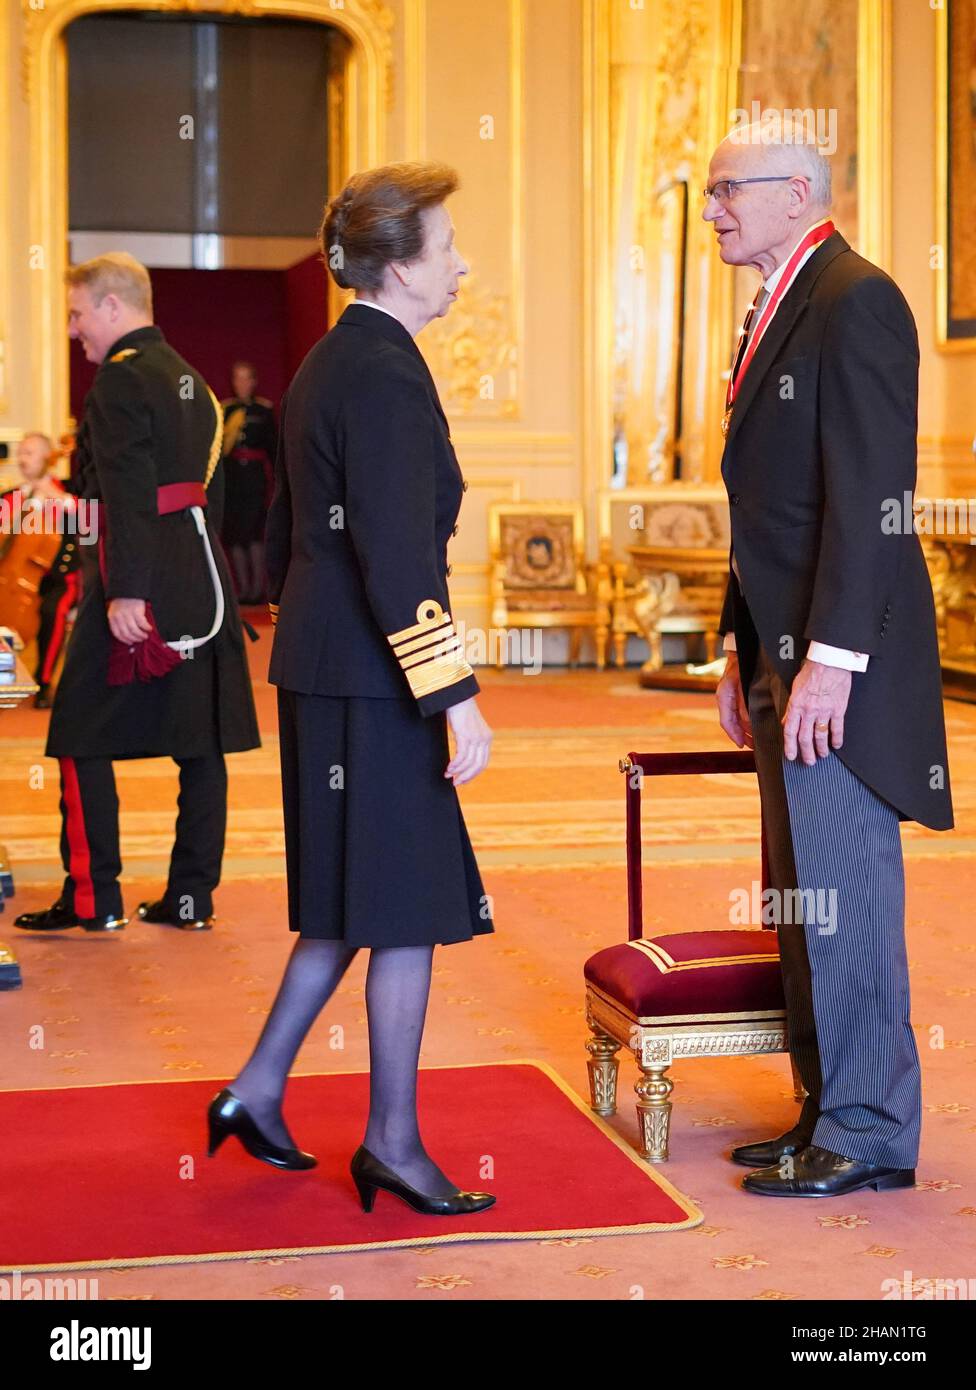 Le professeur Sir John Sambles de Crediton est titulaire d'un baccalauréat en chevalier de la princesse royale au château de Windsor.Date de la photo: Mardi 14 décembre 2021. Banque D'Images